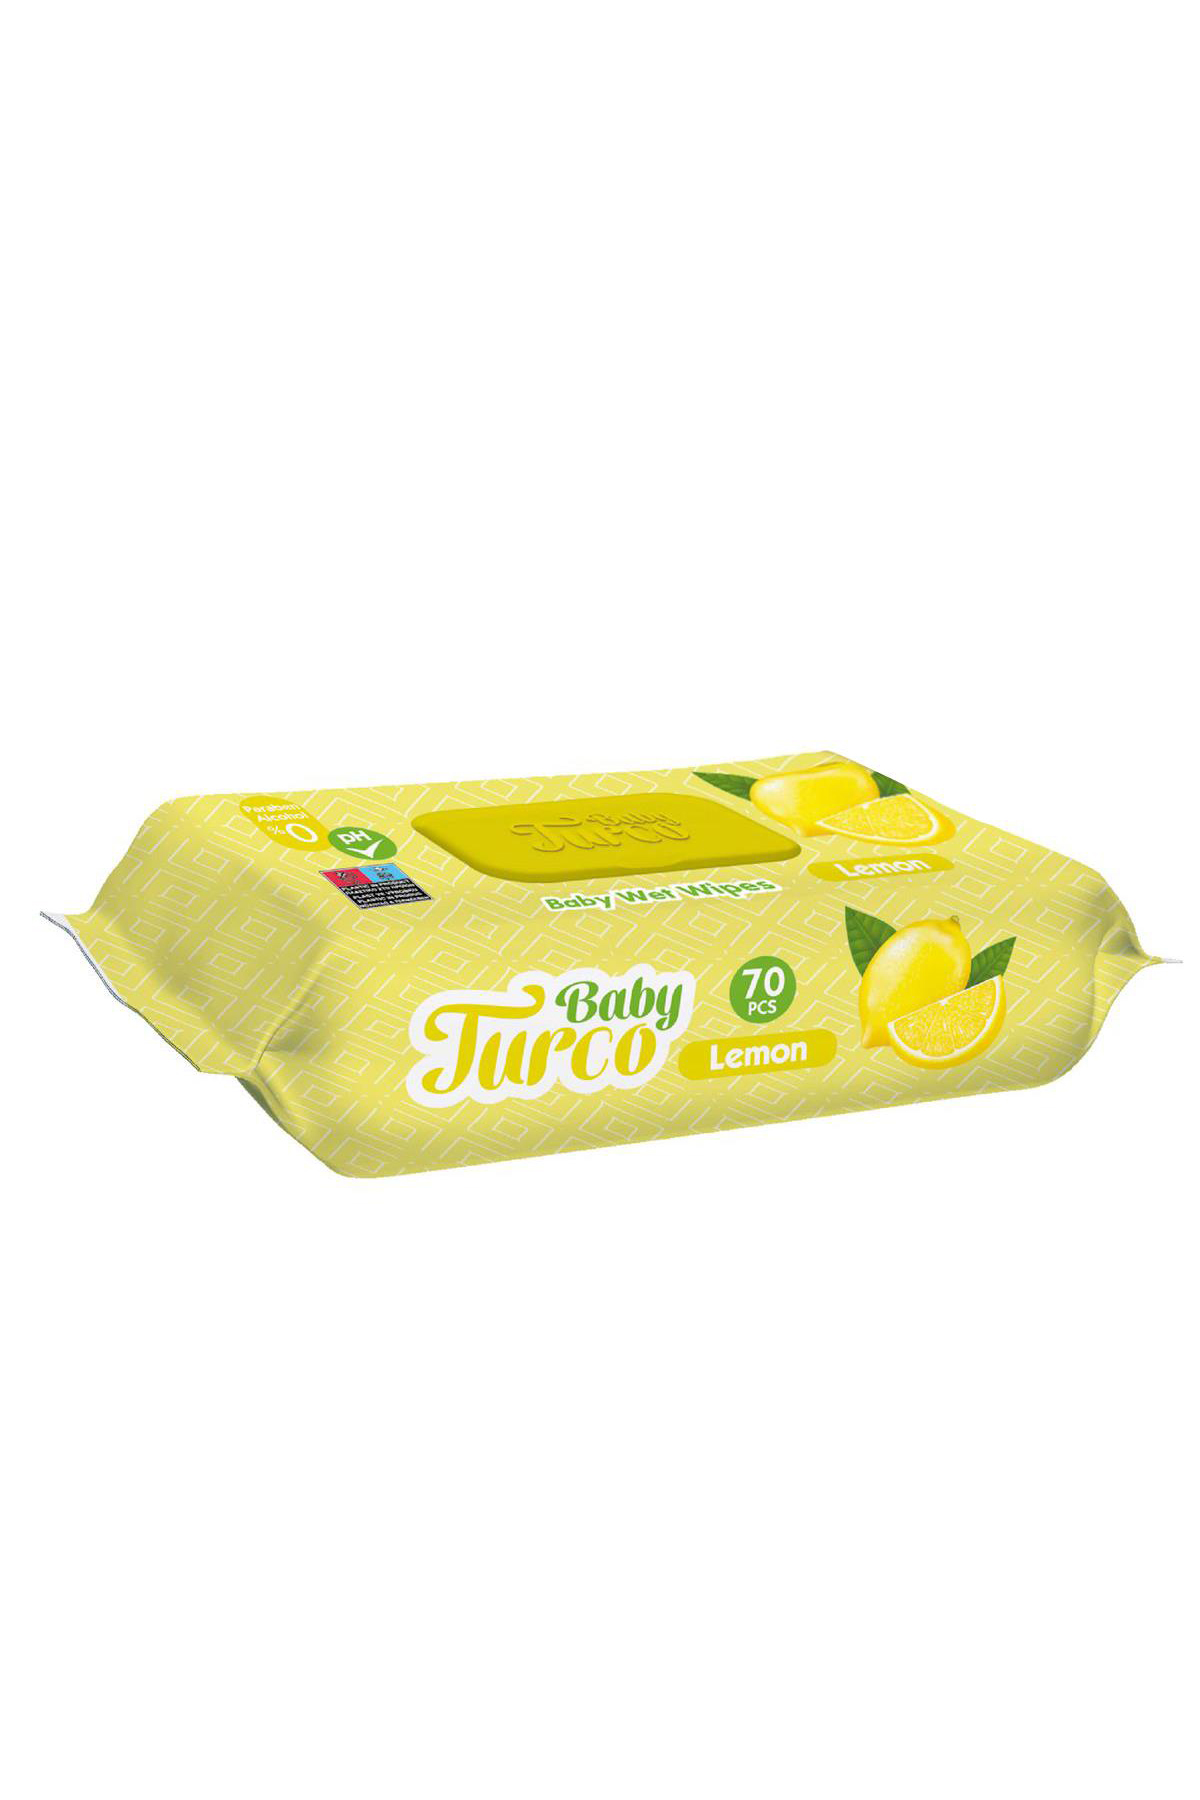 Baby Turco Limon Kokulu Islak Mendil 70 Adet